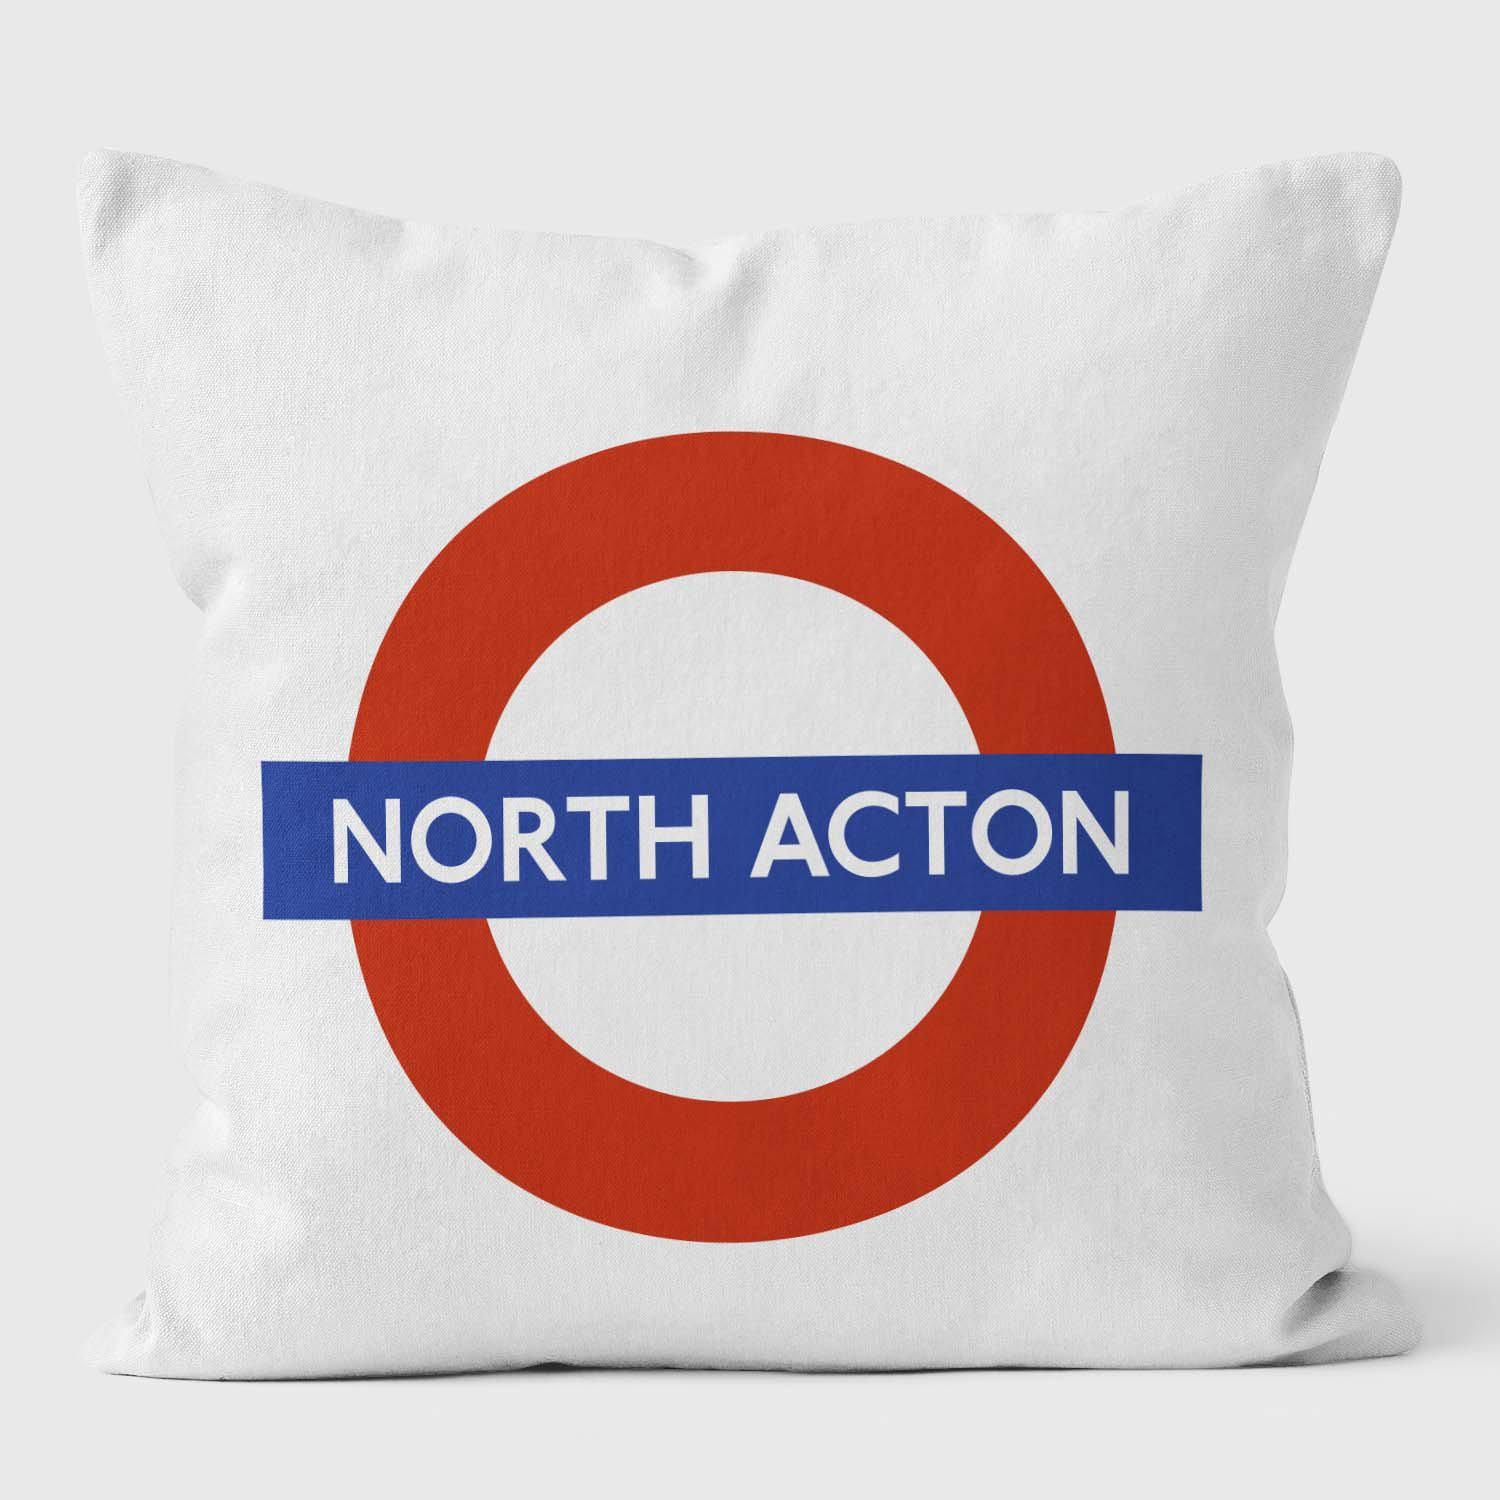 North Acton London Underground Tube Station Roundel Cushion - Handmade Cushions UK - WeLoveCushions